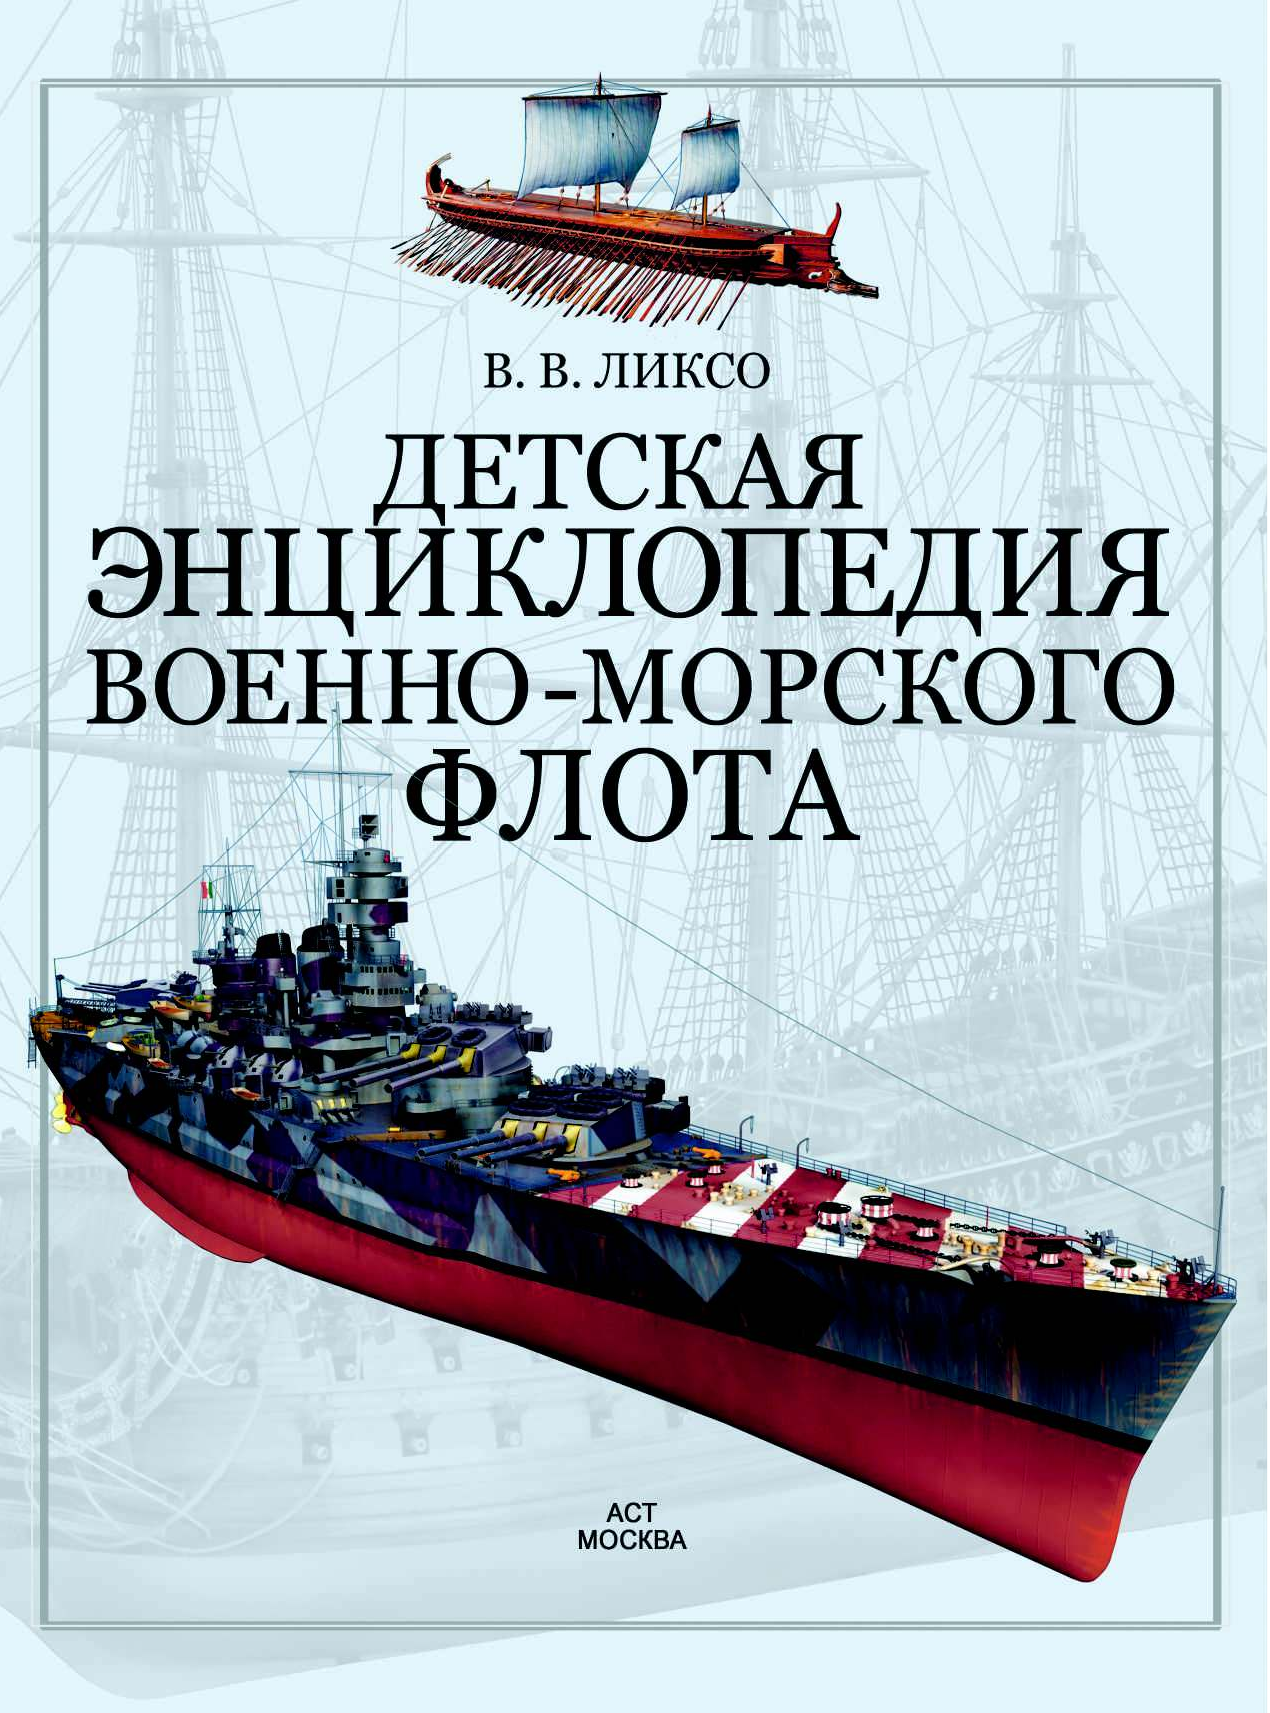  Детская энциклопедия Военно-морского флота - страница 1